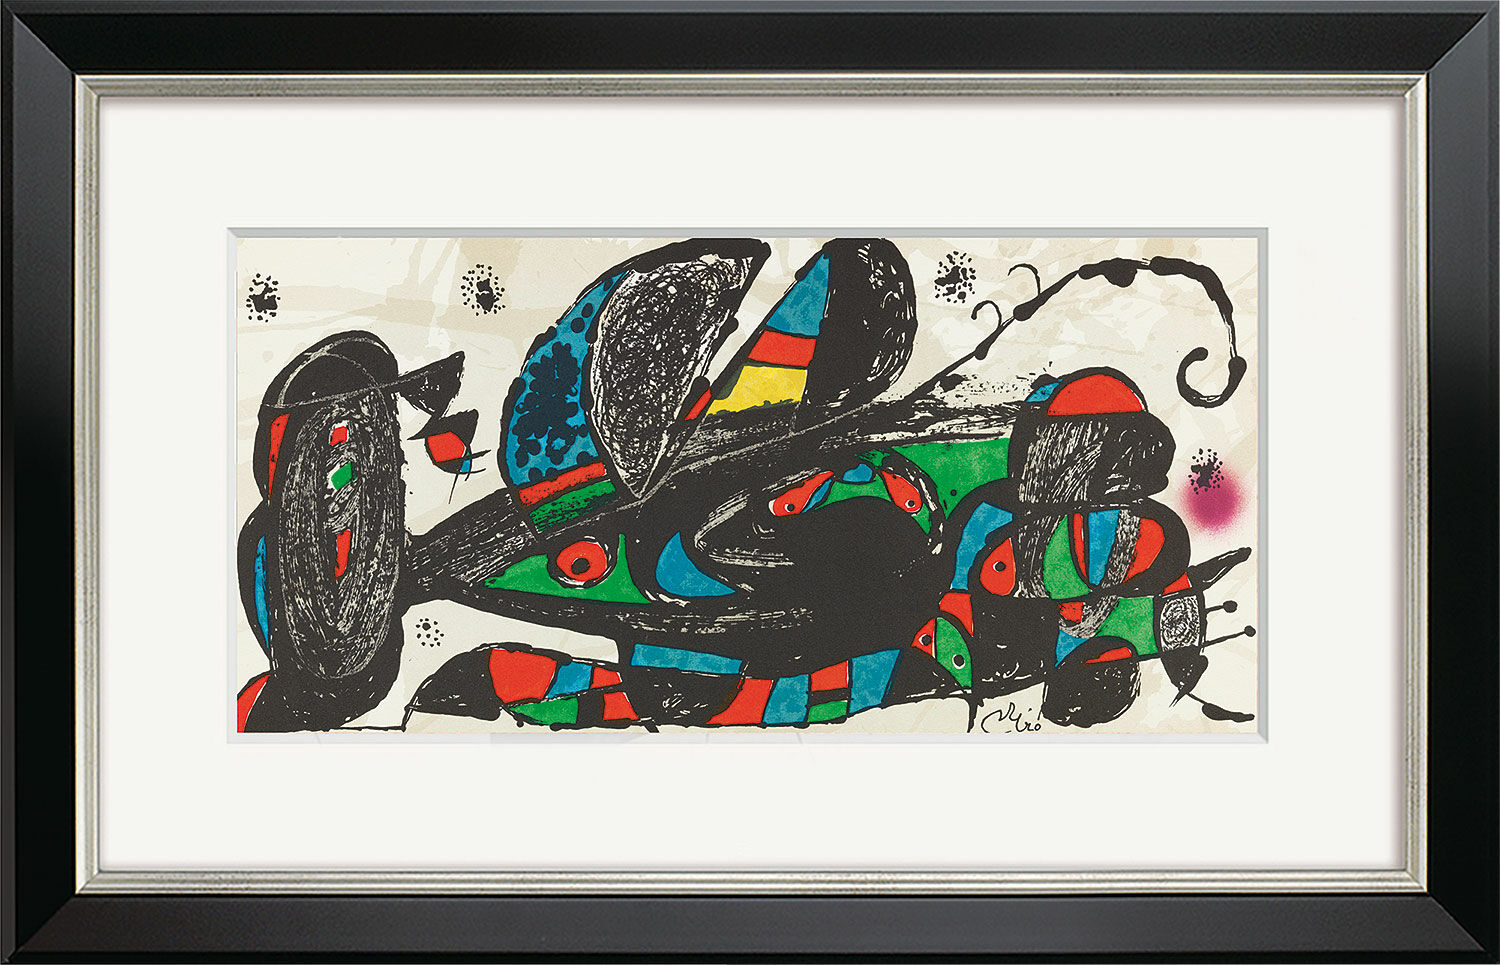 Billede "Escultor Iran" (1974), indrammet von Joan Miró